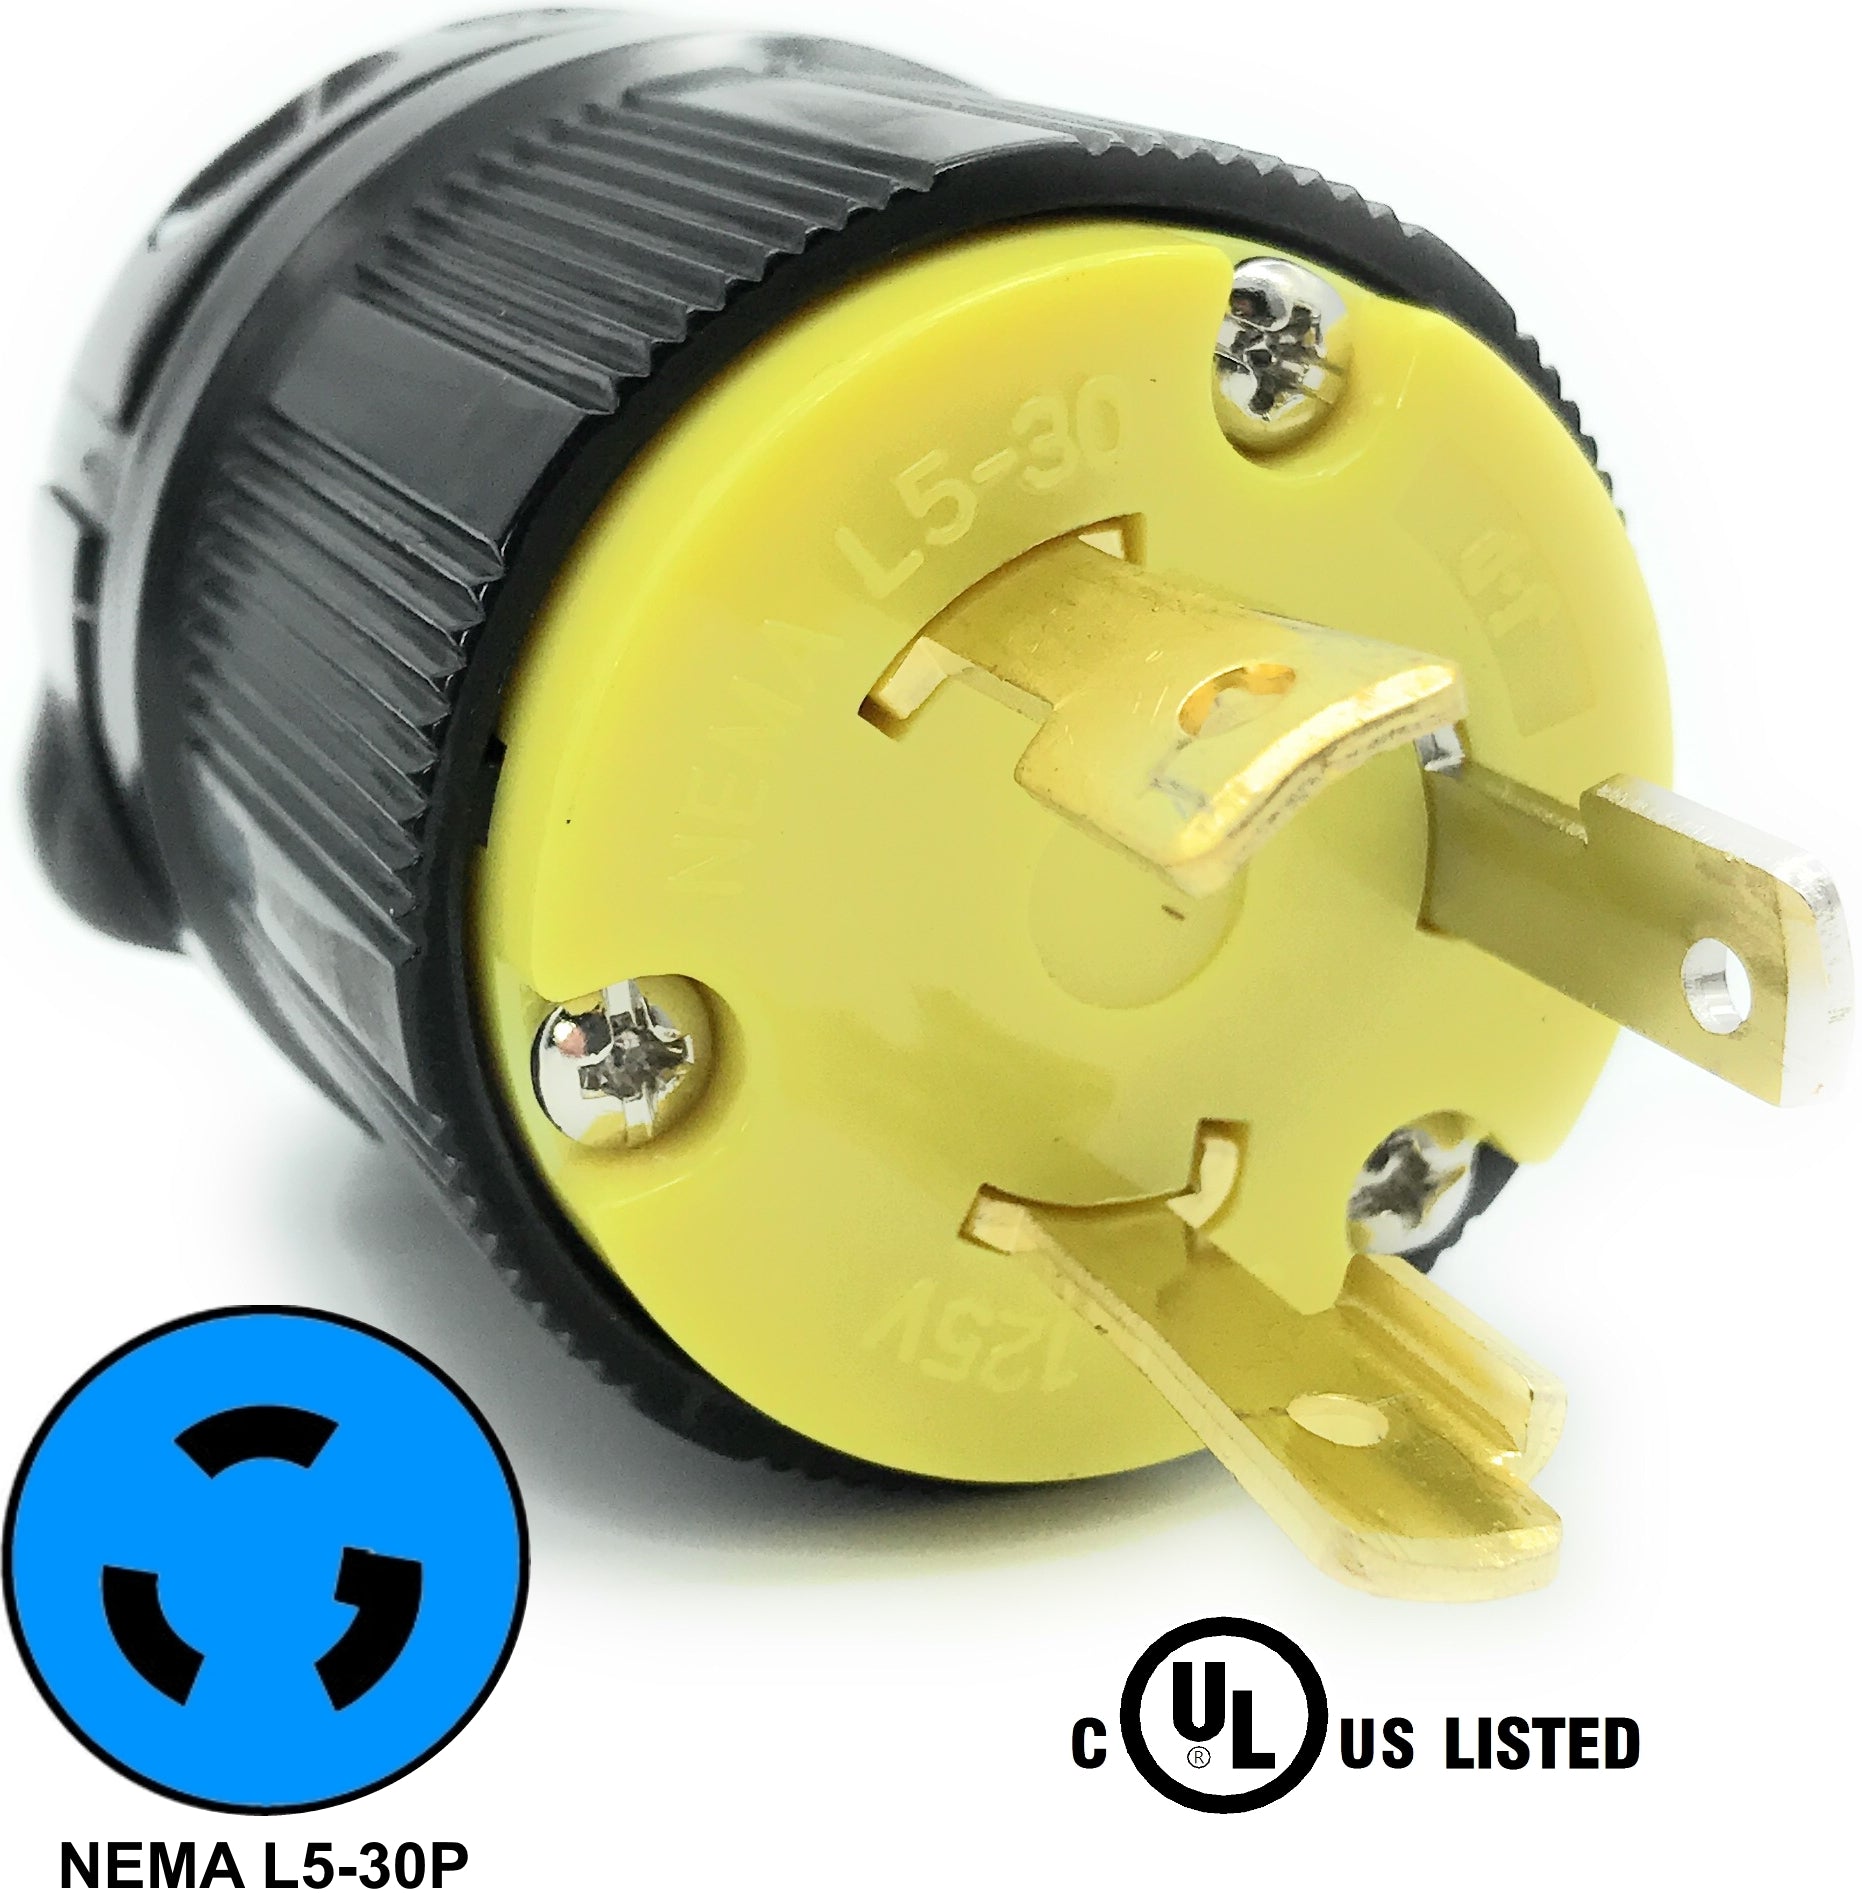 NEMA L5-30P 30A 125V Locking Receptacle Plug, Industrial Grade 3